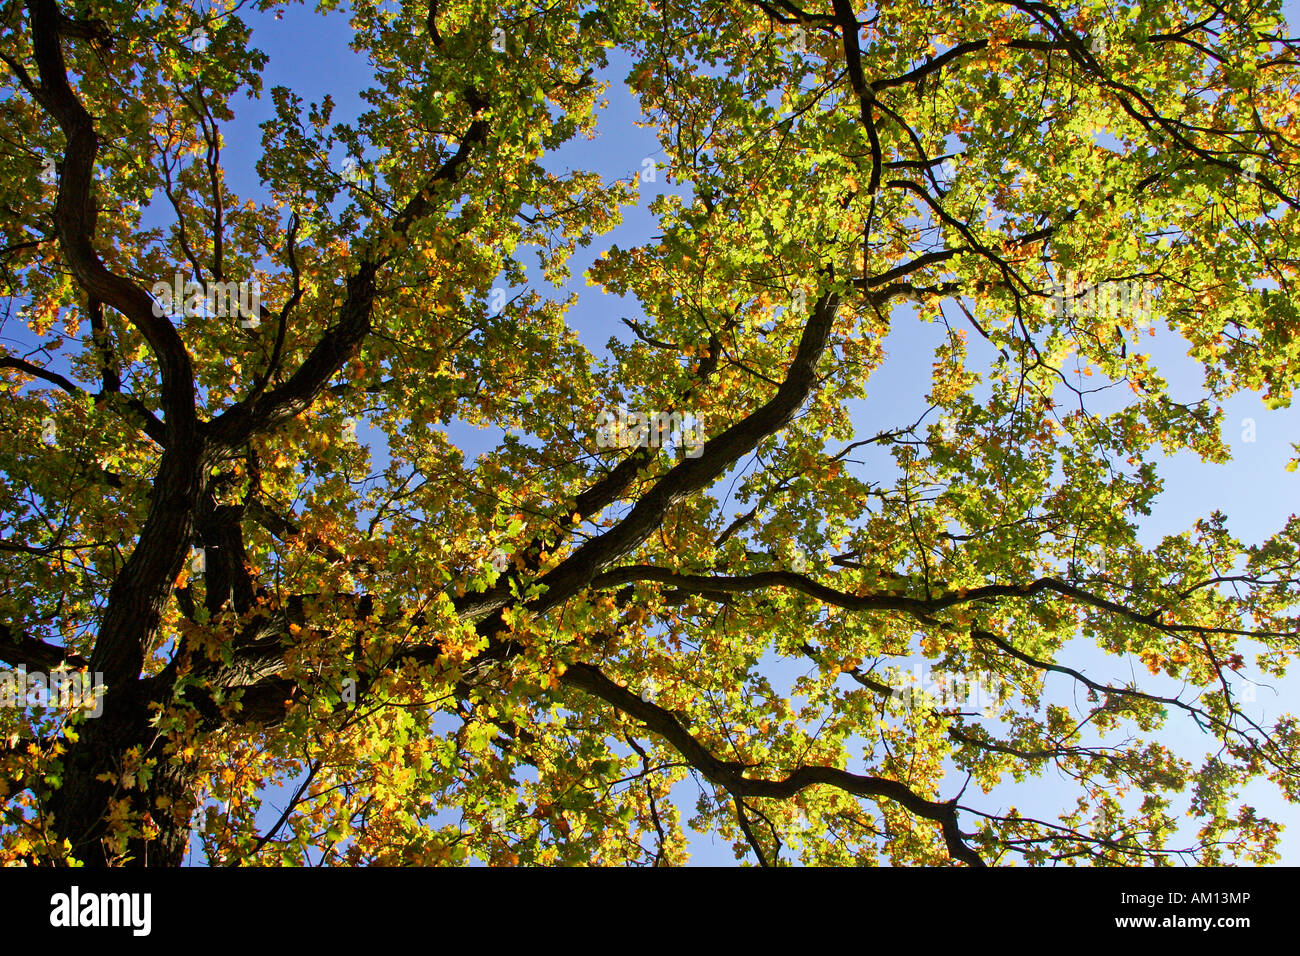 Alte englische Eiche - pedunculate Eiche - Blätter in Herbstfärbung - buntes Laub Stockfoto